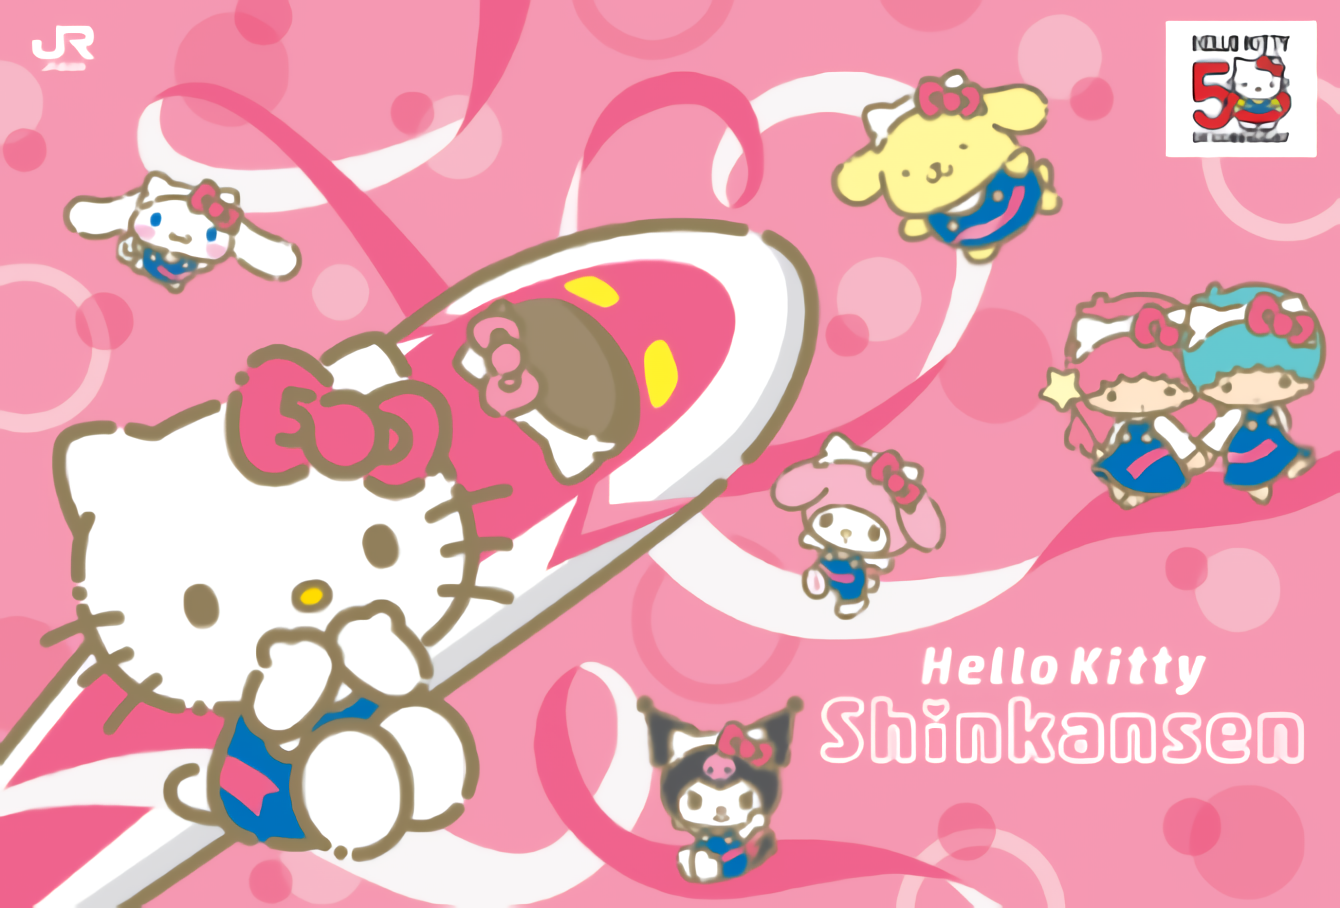 การตกแต่งภายในรถไฟ Shinkansen ในวาระครบรอบ 50 ปีของ Hello Kitty จาก Sanrio